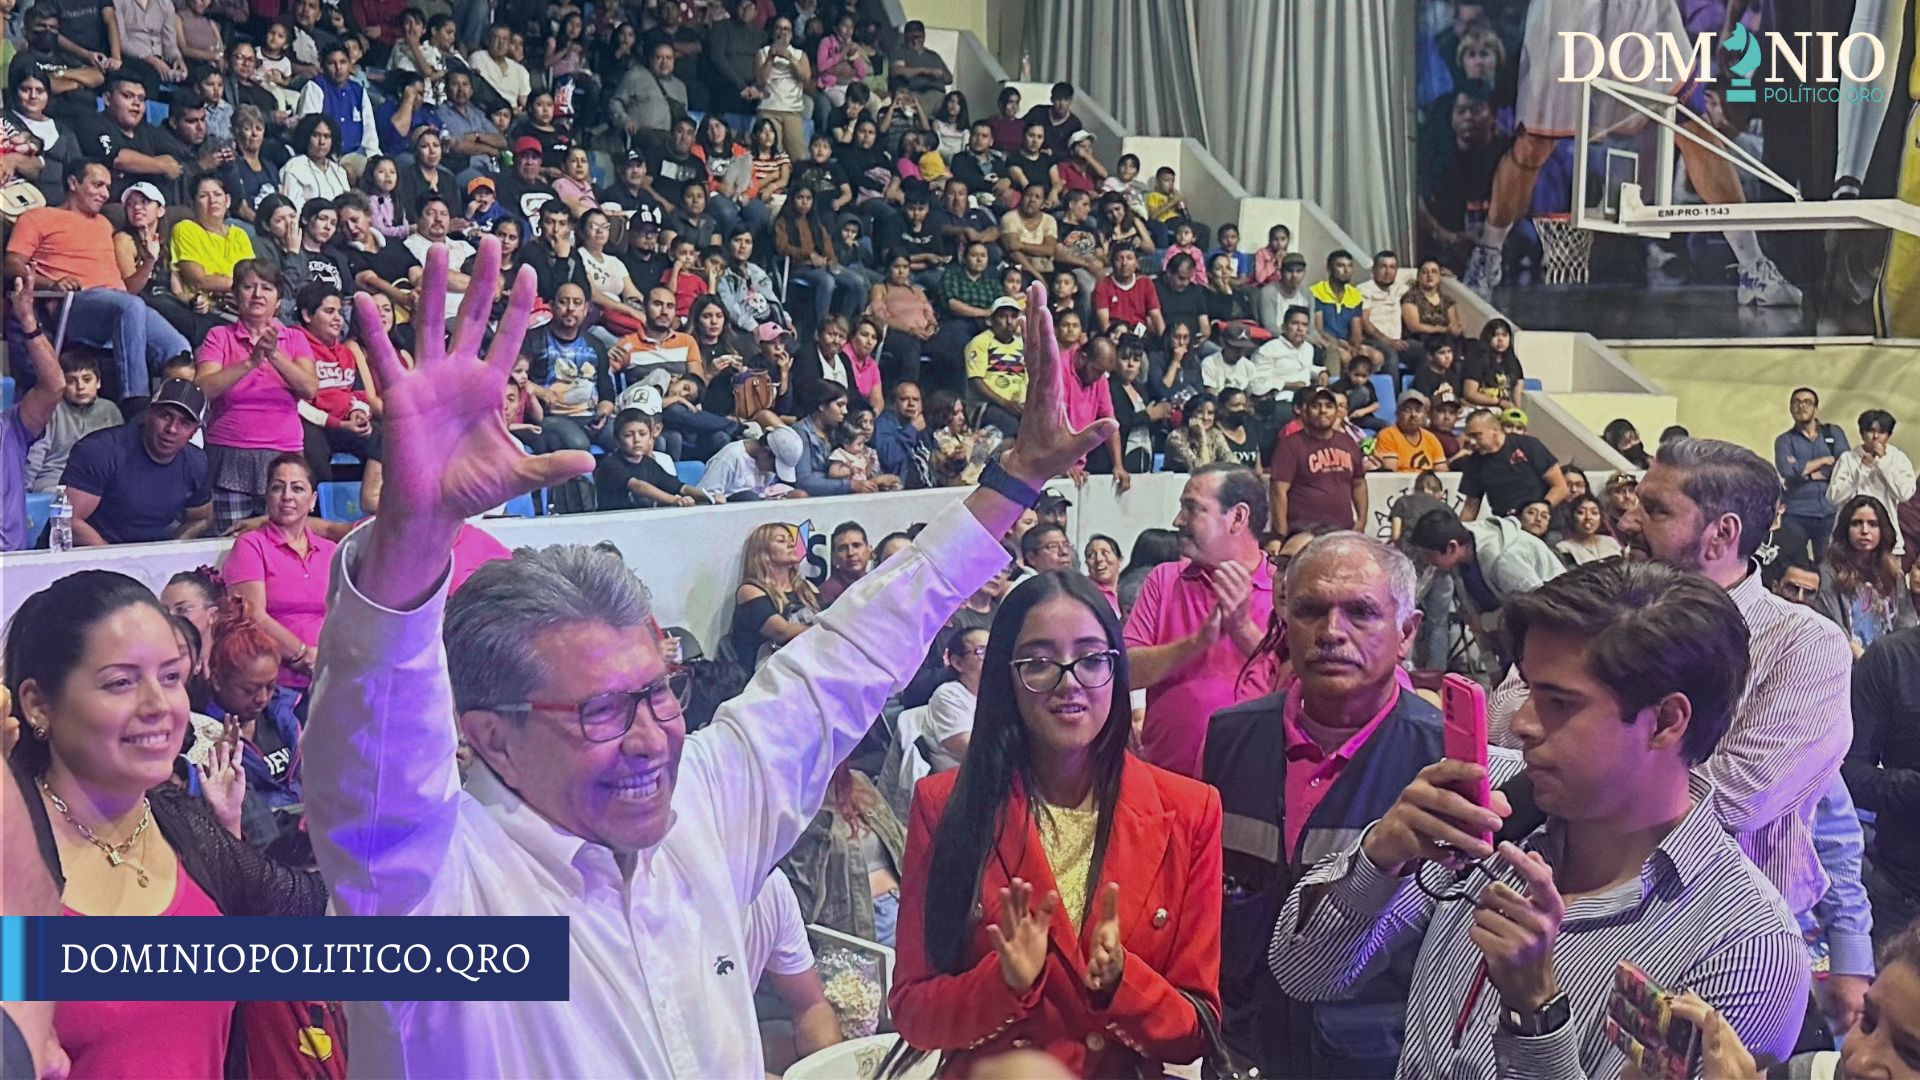 “El presidente AMLO es un ejemplo de democracia”, Ricardo Monreal Ávila